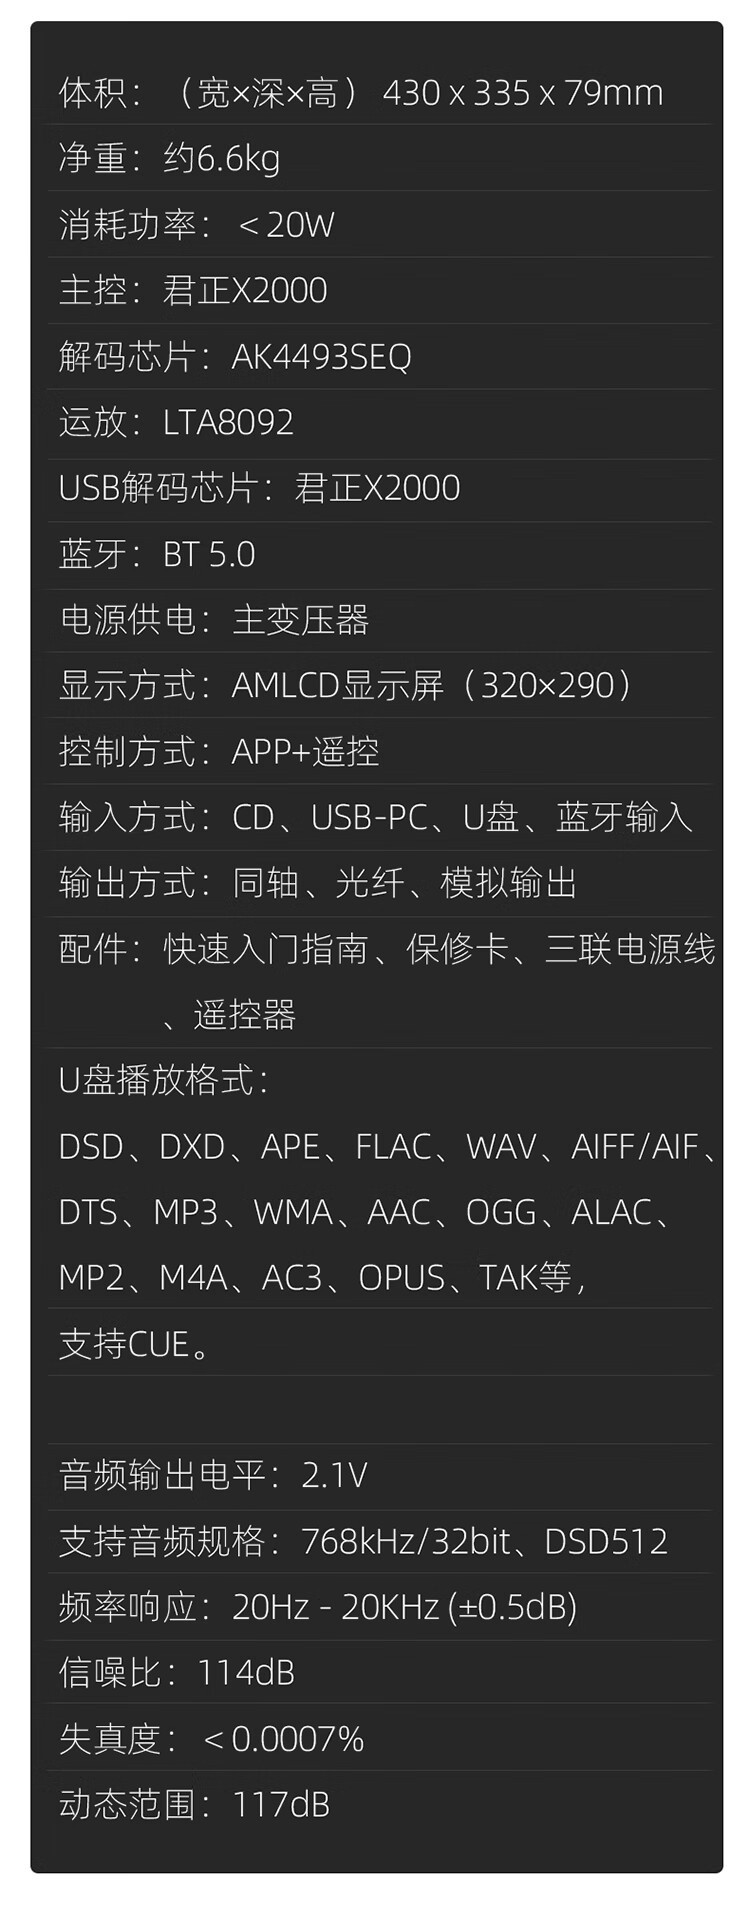 山灵推出 CD-S100 23 版高清 CD 播放机：X2000主控、HD850光头、MT1389L伺服系统